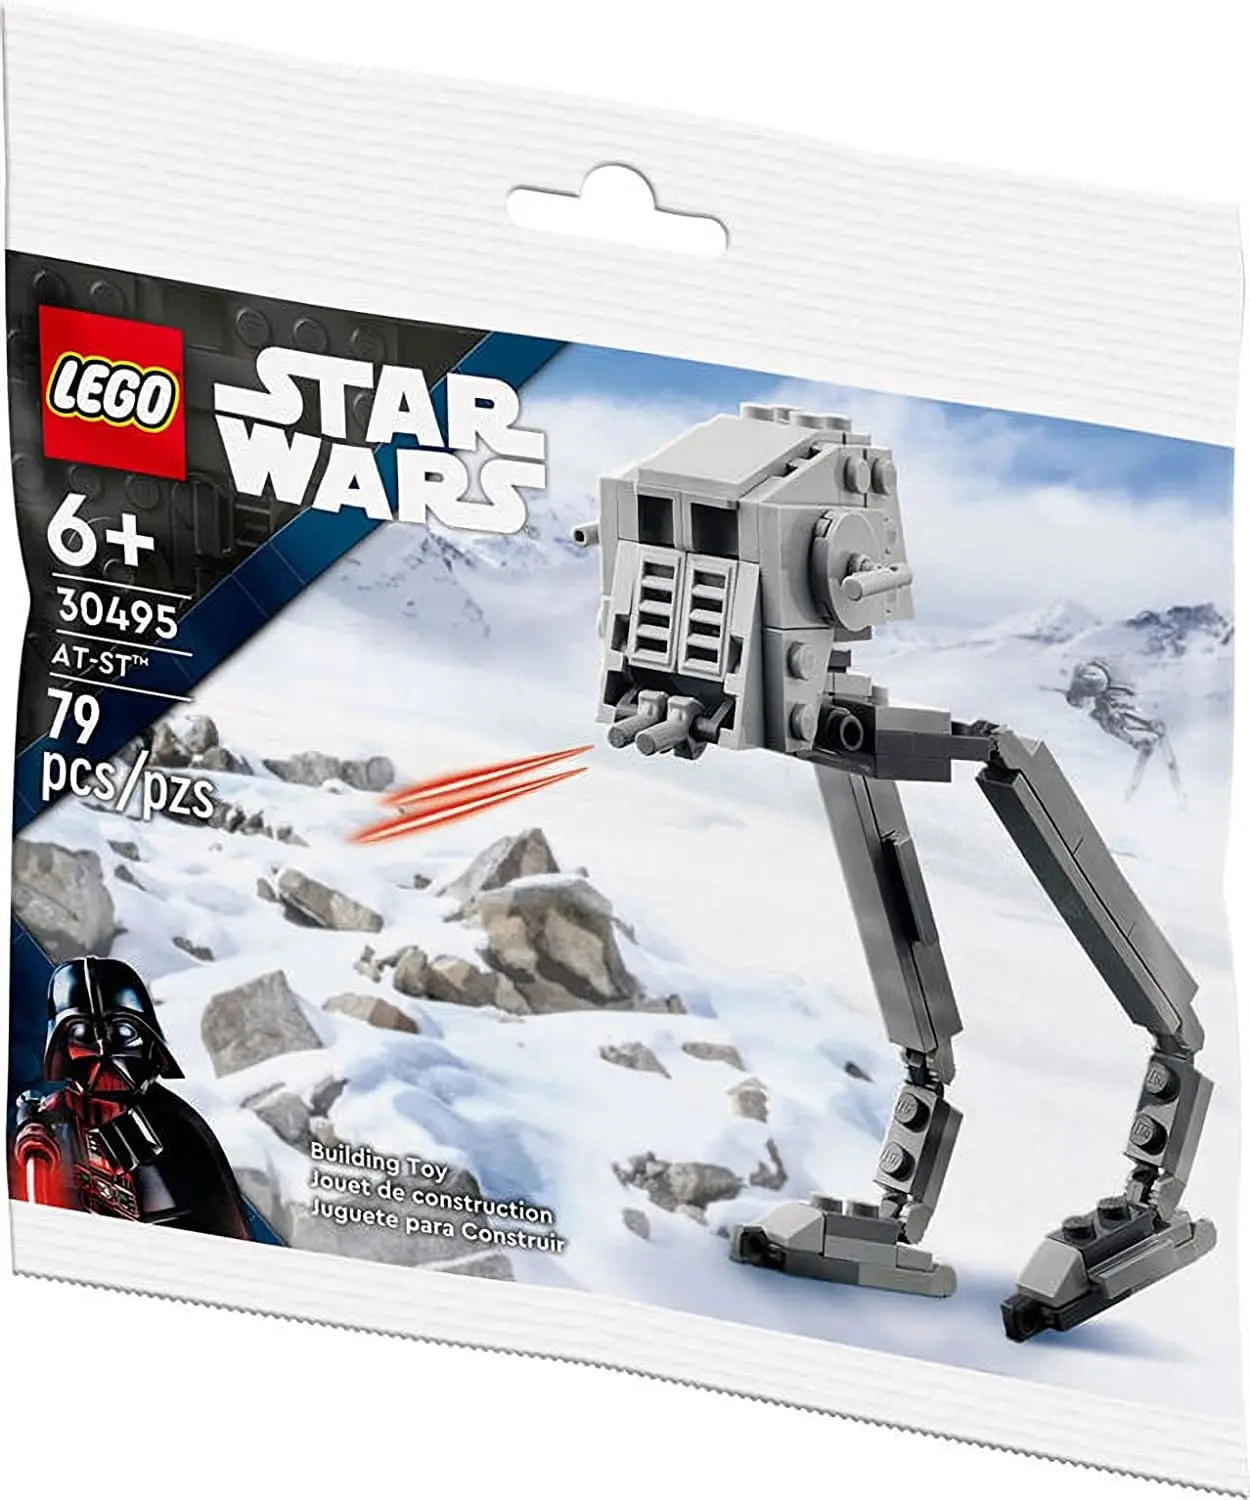 LEGO Star Wars AT-ST 30495 полиэтиленовый пакет